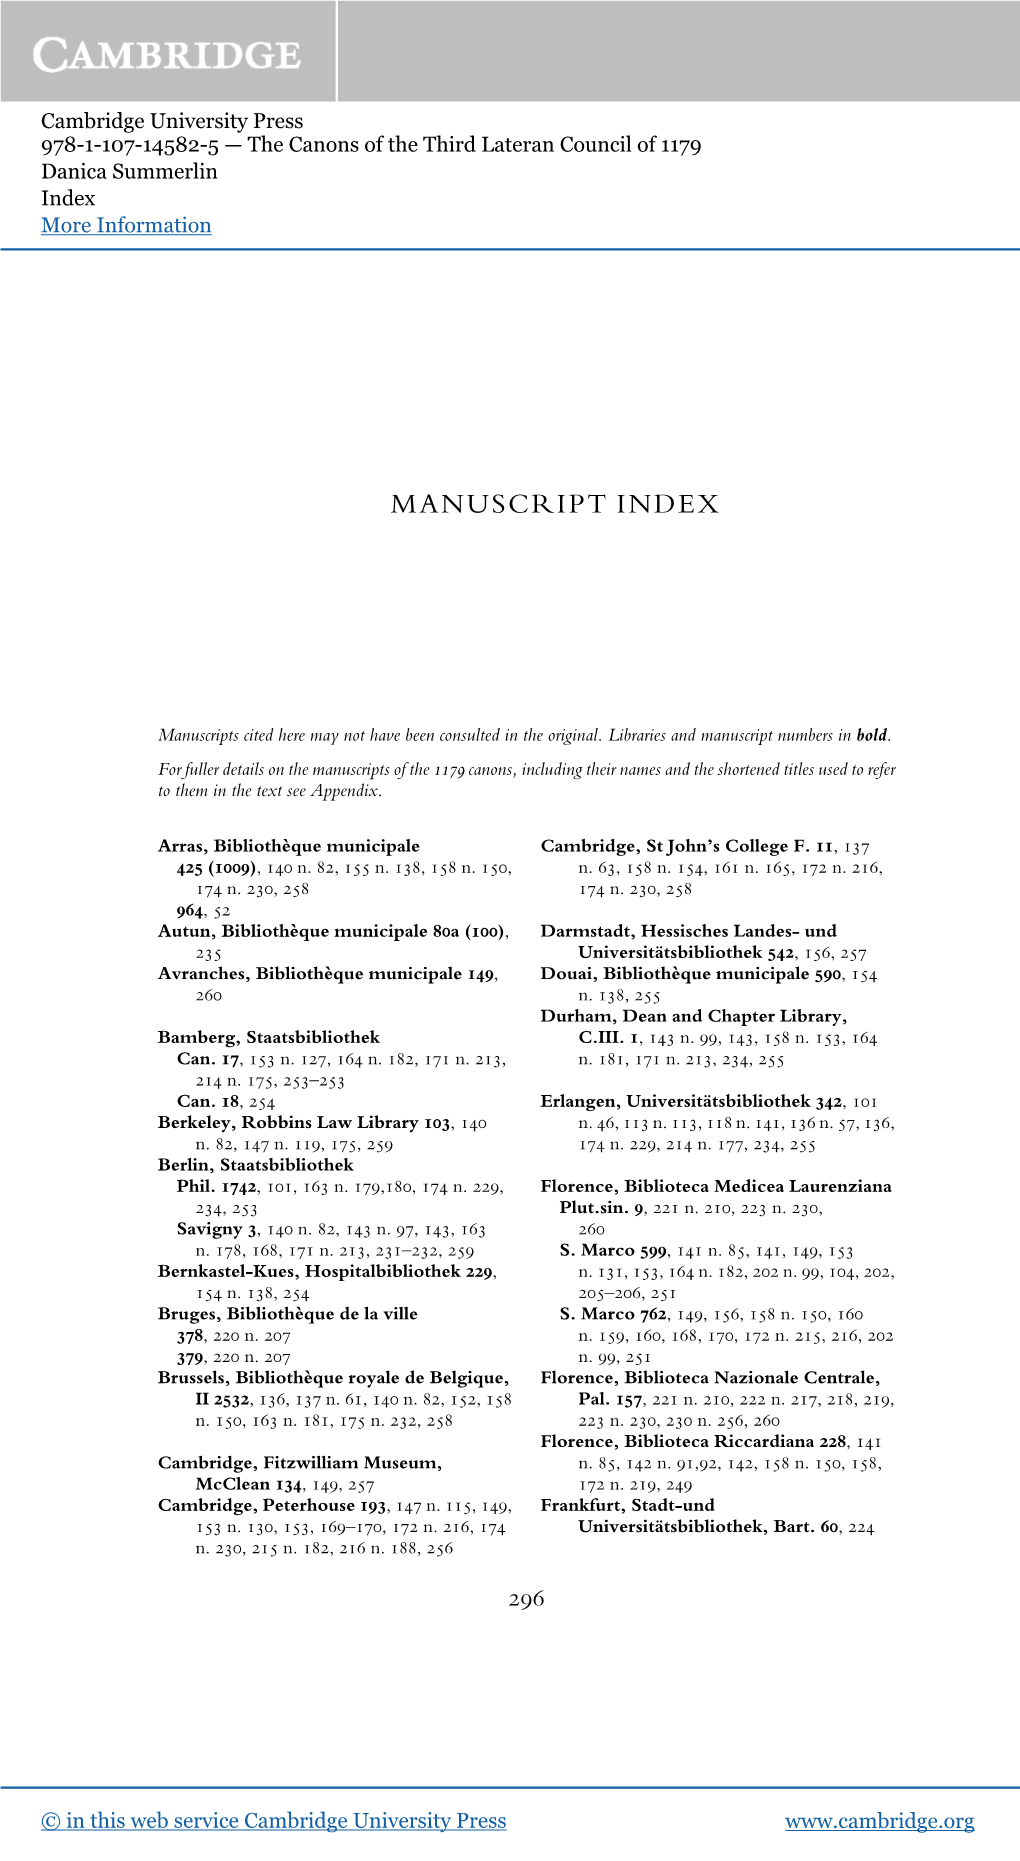 Manuscript Index